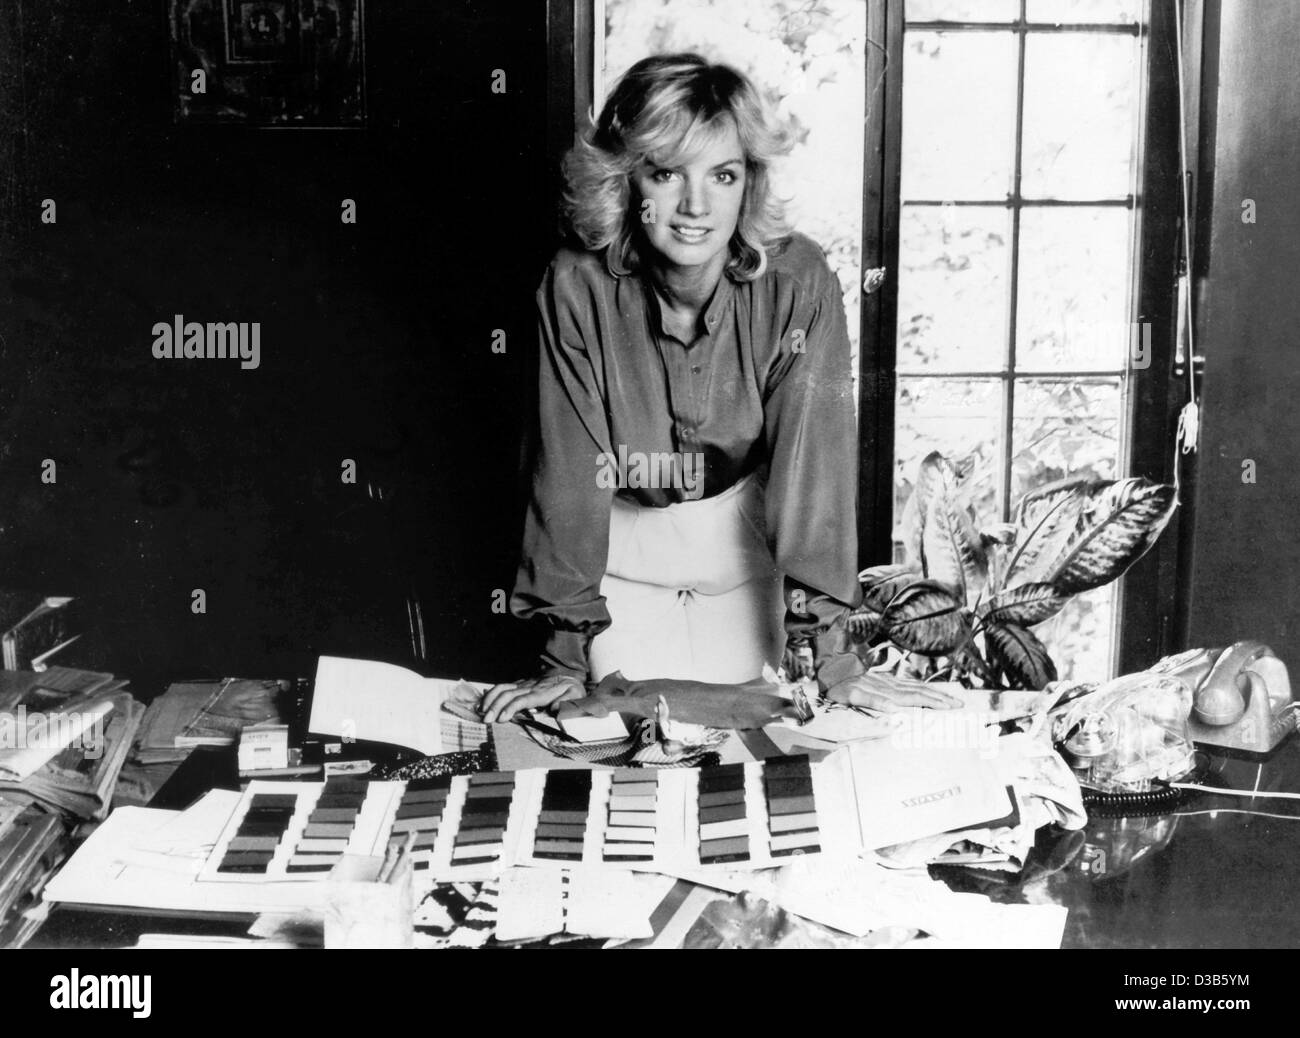 Dpa-Dateien) - der deutsche Modeschöpfer und Ex-Model Jil Sander zeigt  Muster des Tuches (undatiert). Ihre erste Boutique eröffnete der Hamburger  Designer geboren 1966. Zu Beginn der 80er Jahre umfasste ihr Unternehmen  etwa